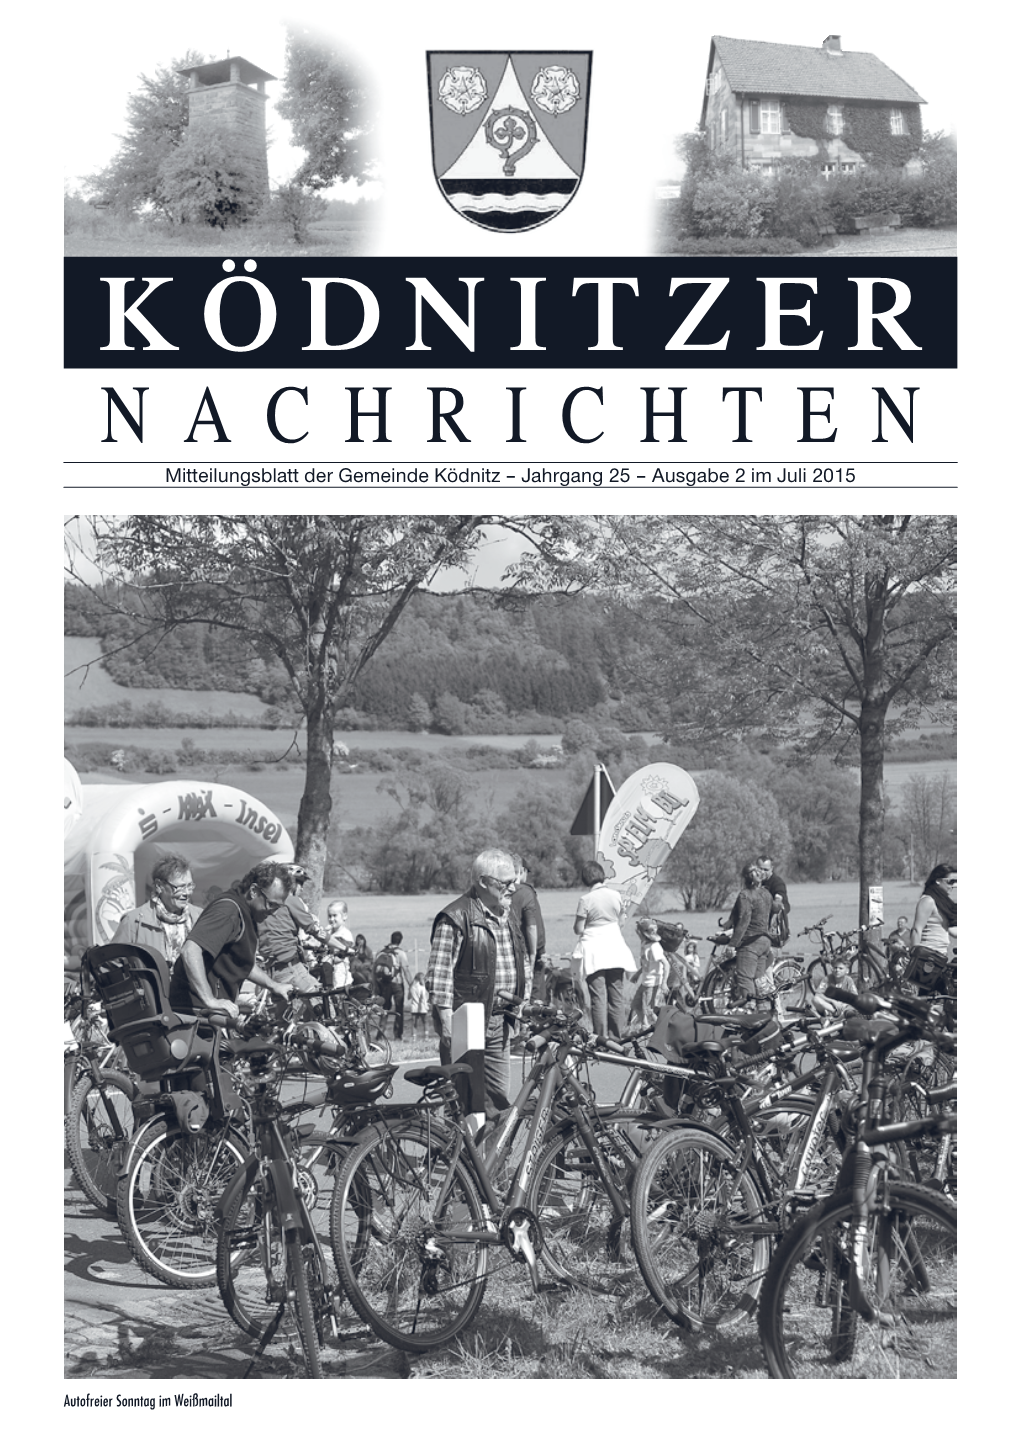 Koednitzer Nachrichten 2015 07.Pdf